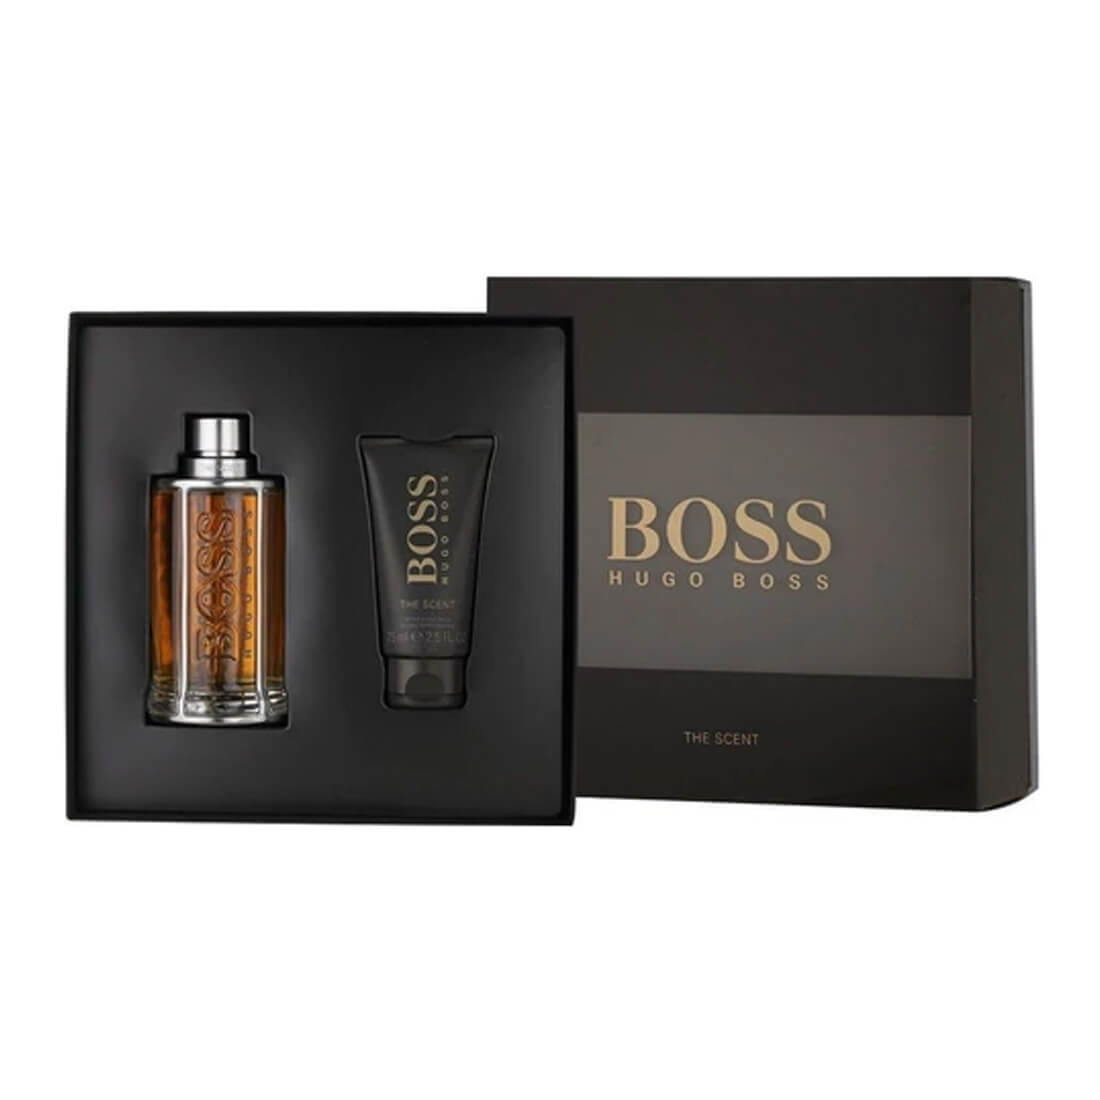 boss men's cologne gift set